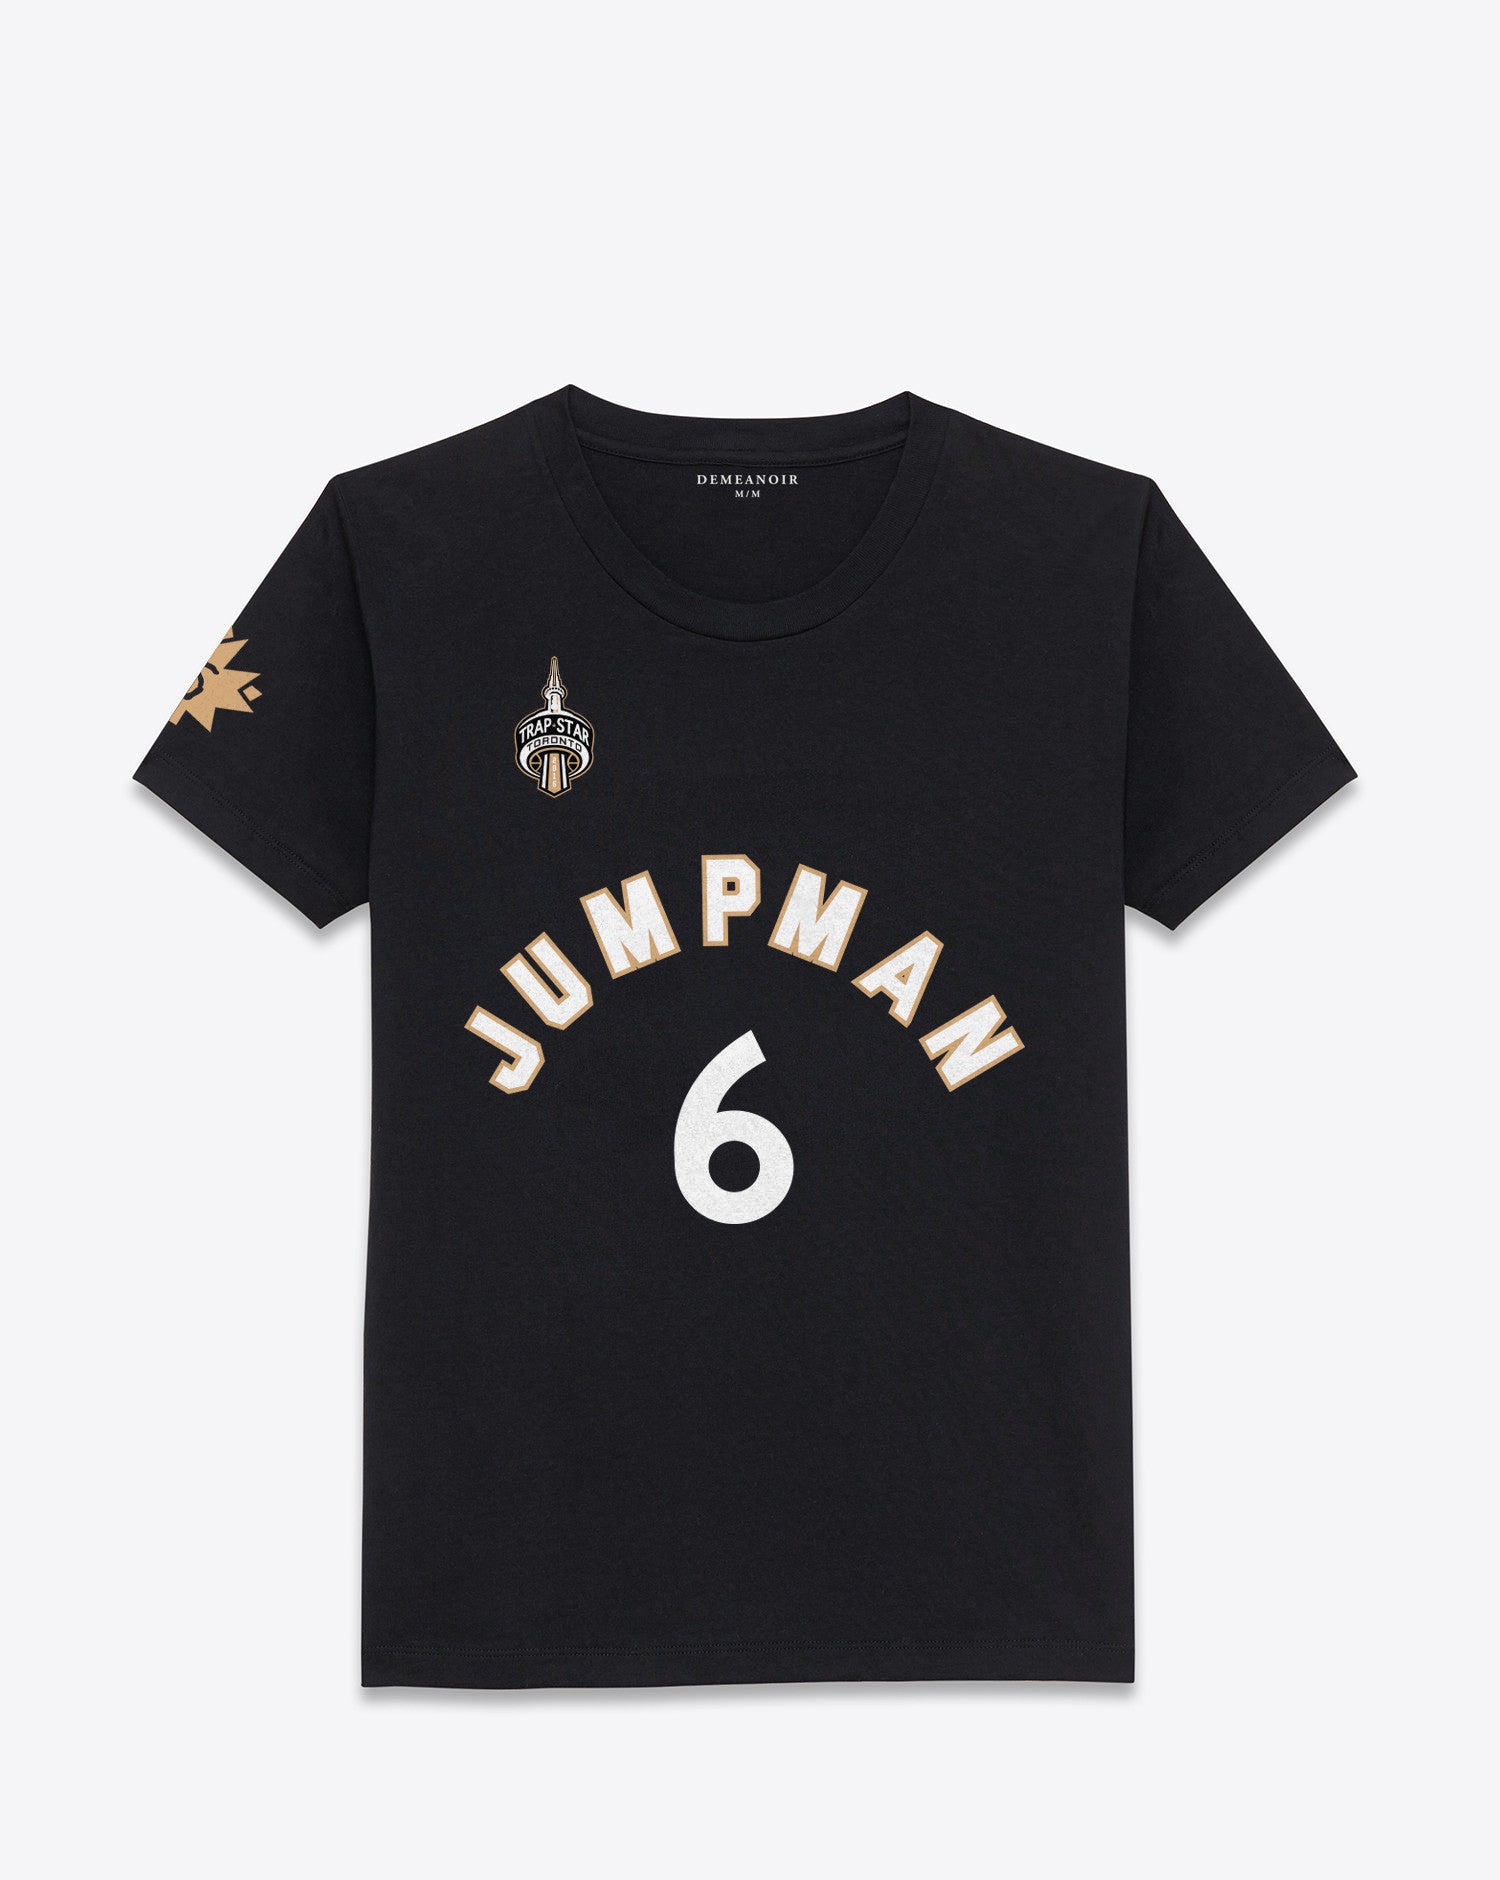 6 Jumpman T-Shirt Alternate - DEMEANOIR - 1